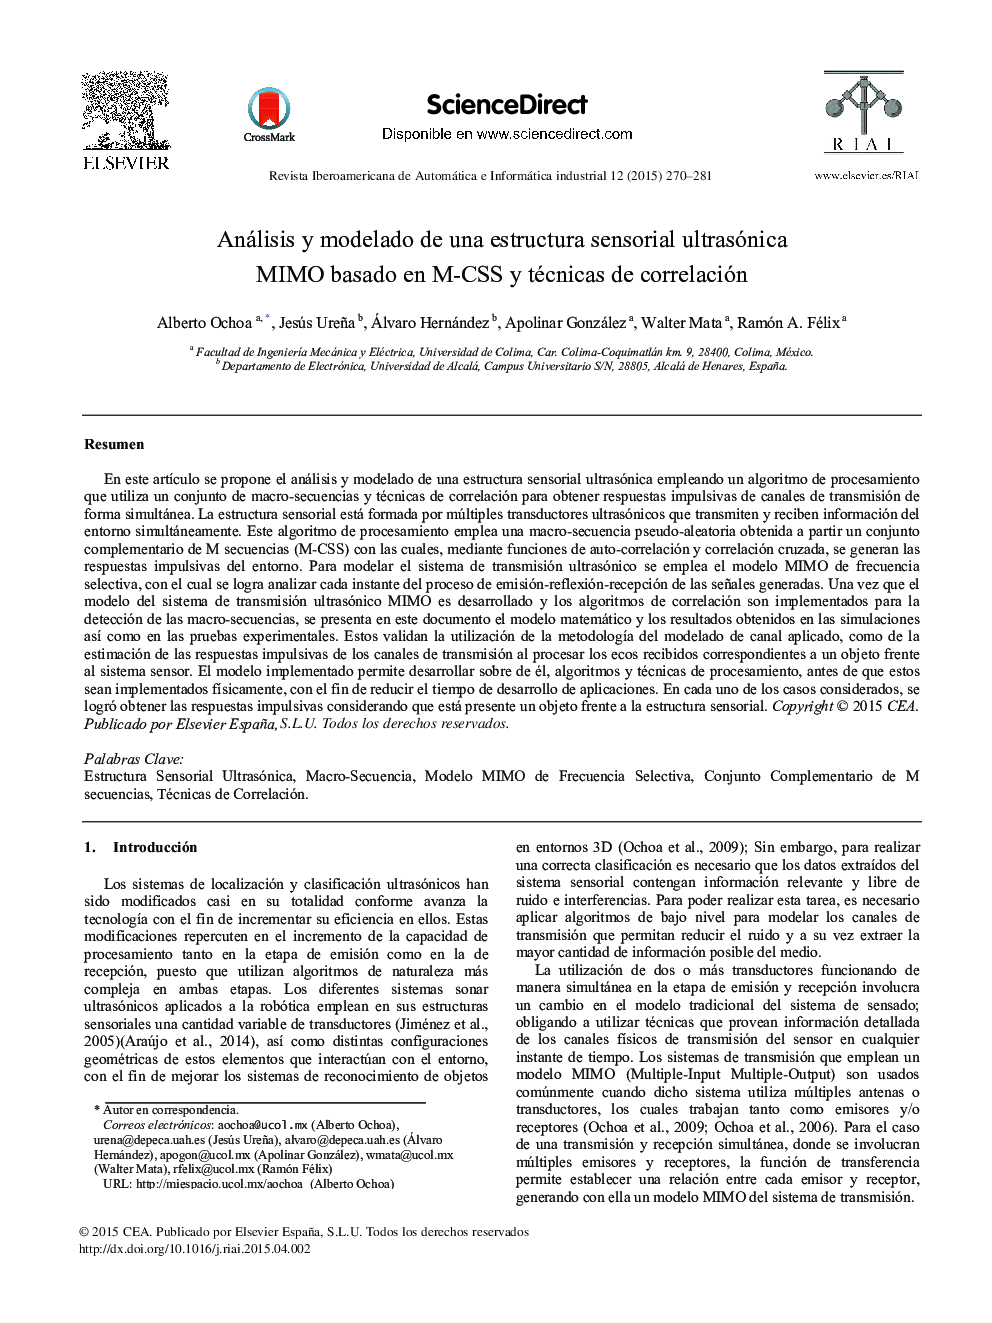 Análisis y modelado de una estructura sensorial ultrasónica MIMO basado en M-CSS y técnicas de correlación